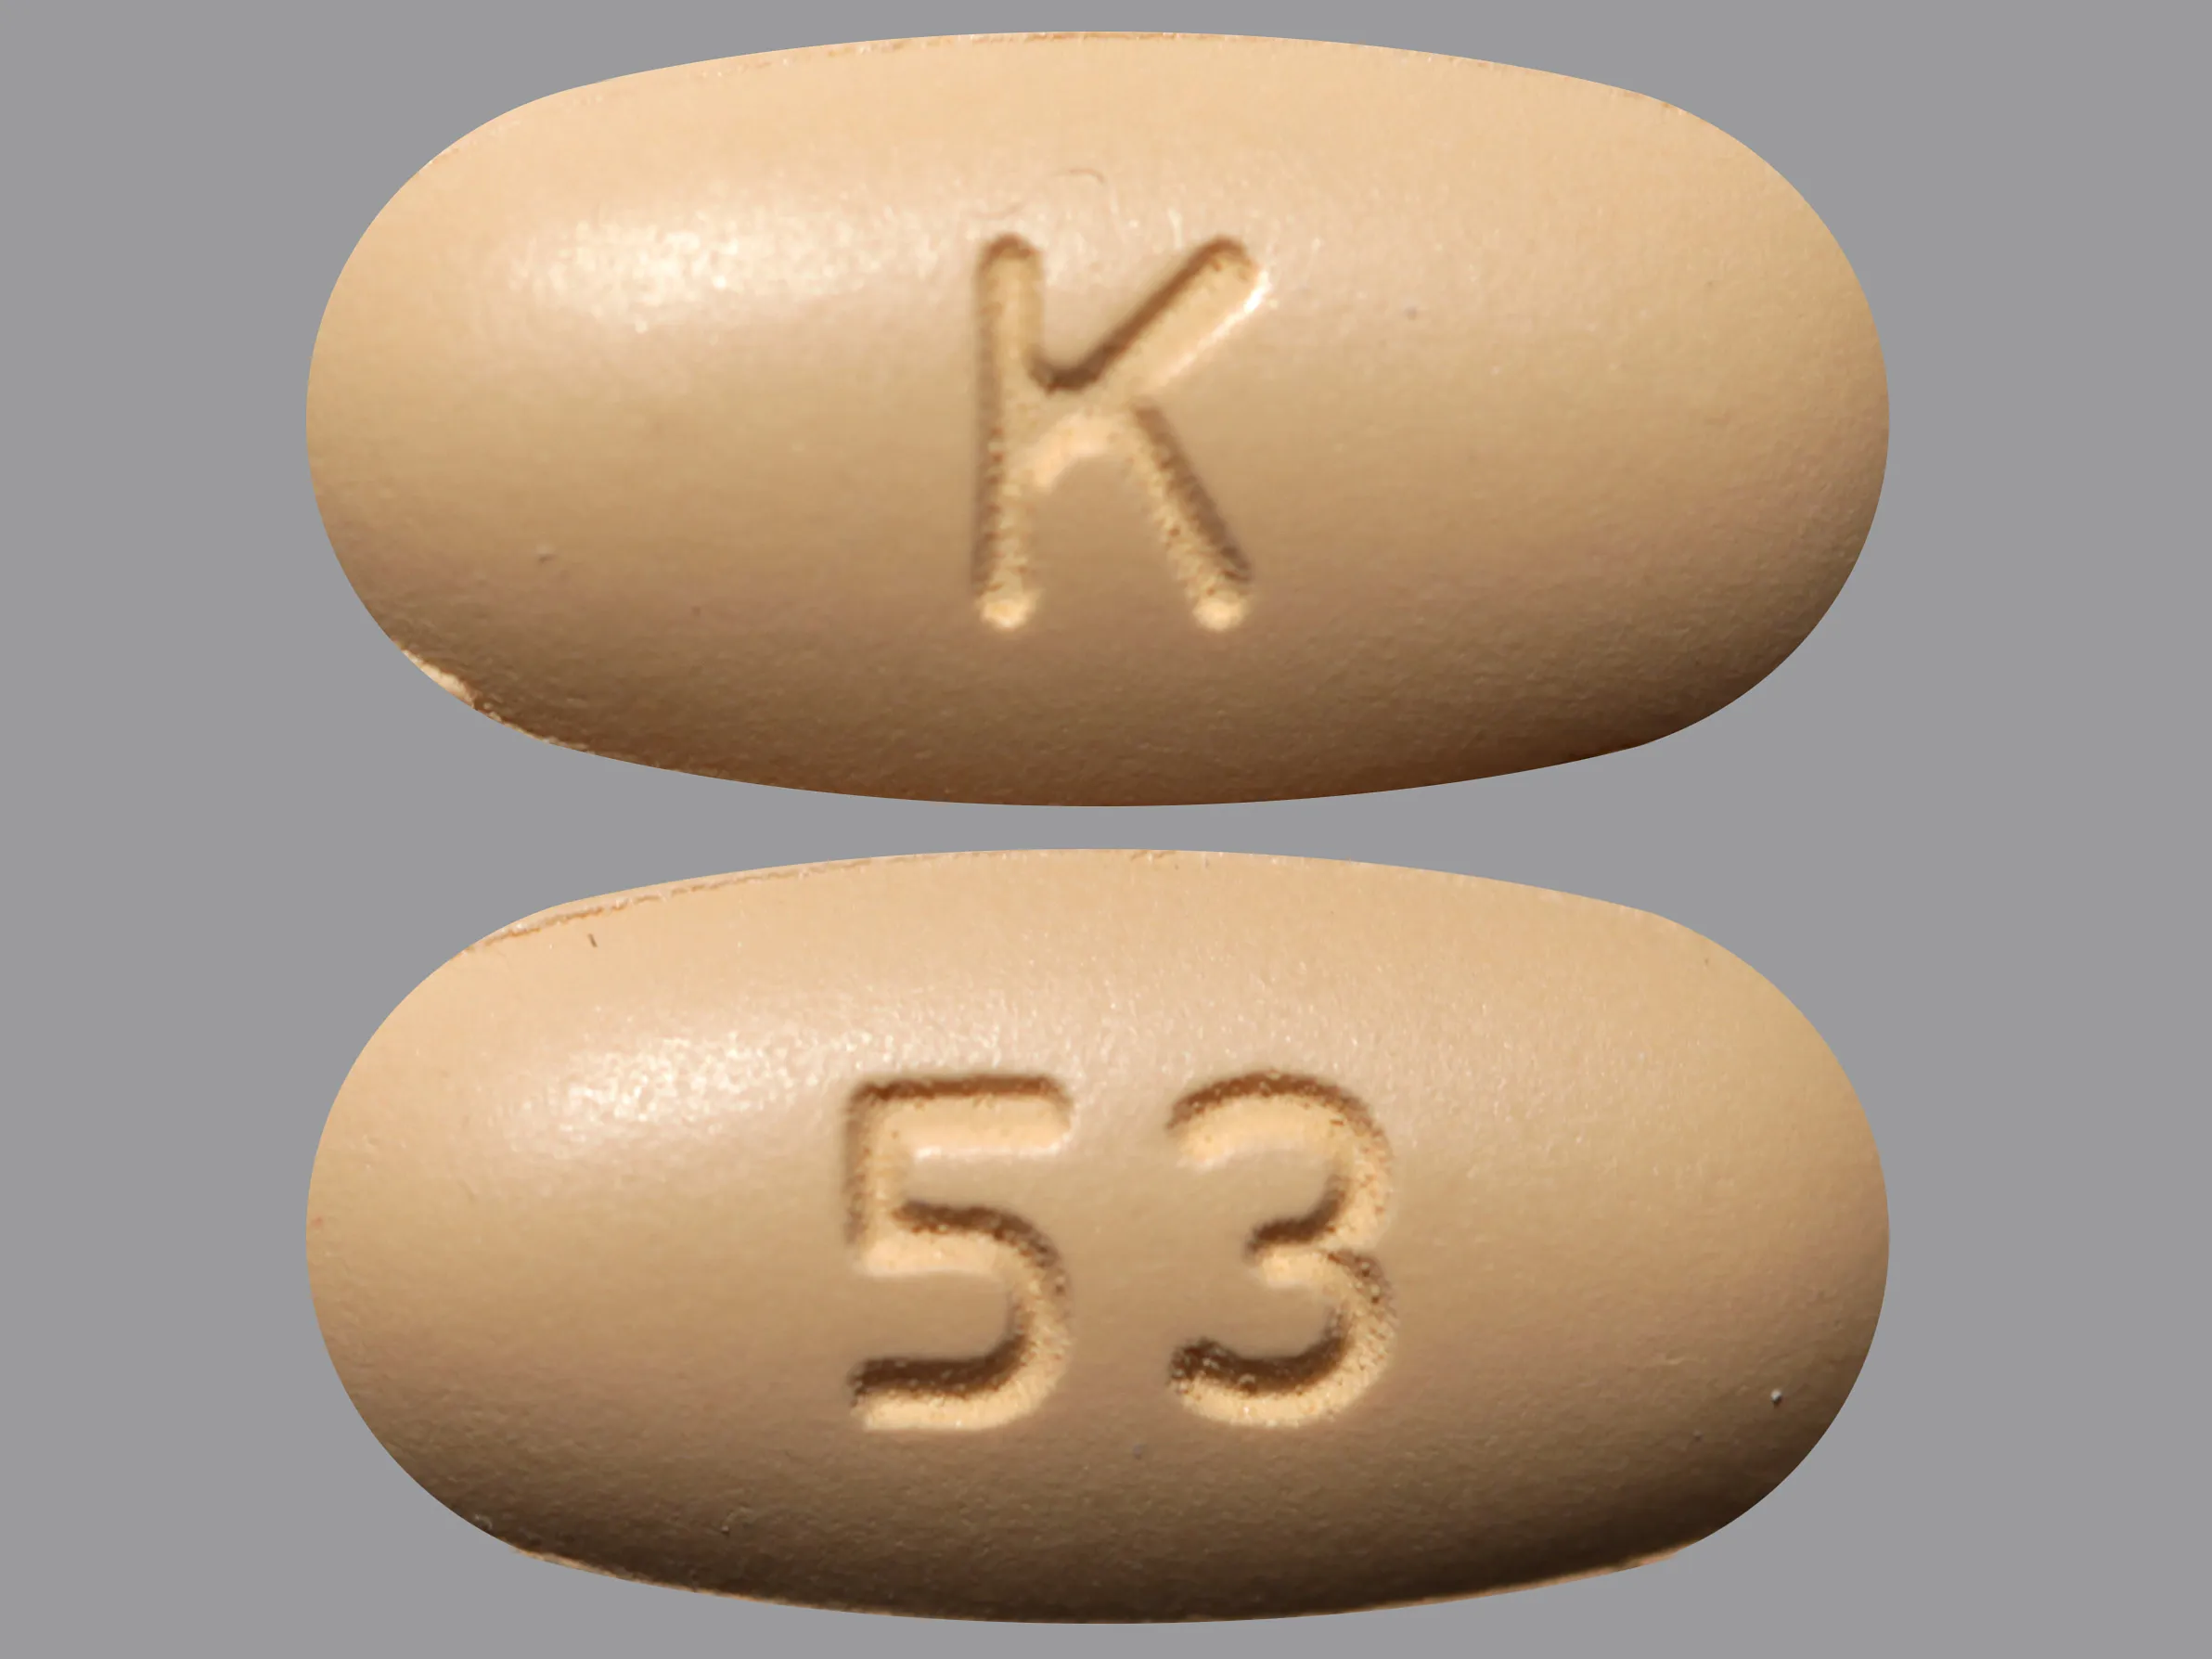 olmesartan 40 mg-hydrochlorothiazide 12.5 mg tablet